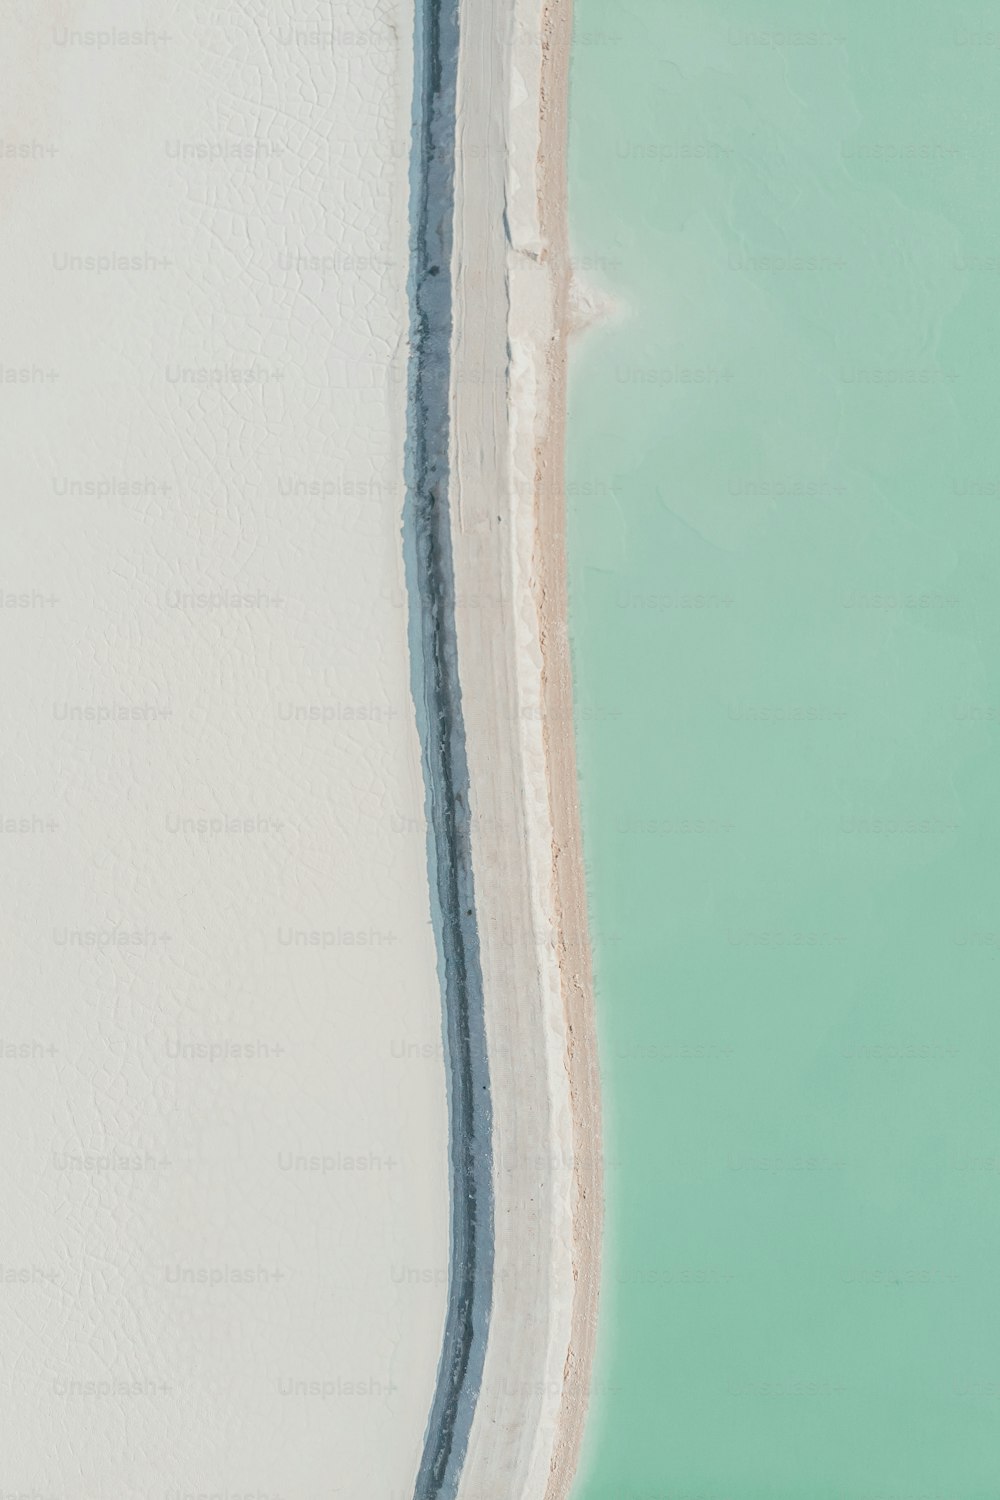 砂浜の上でサーフボード��に乗る男